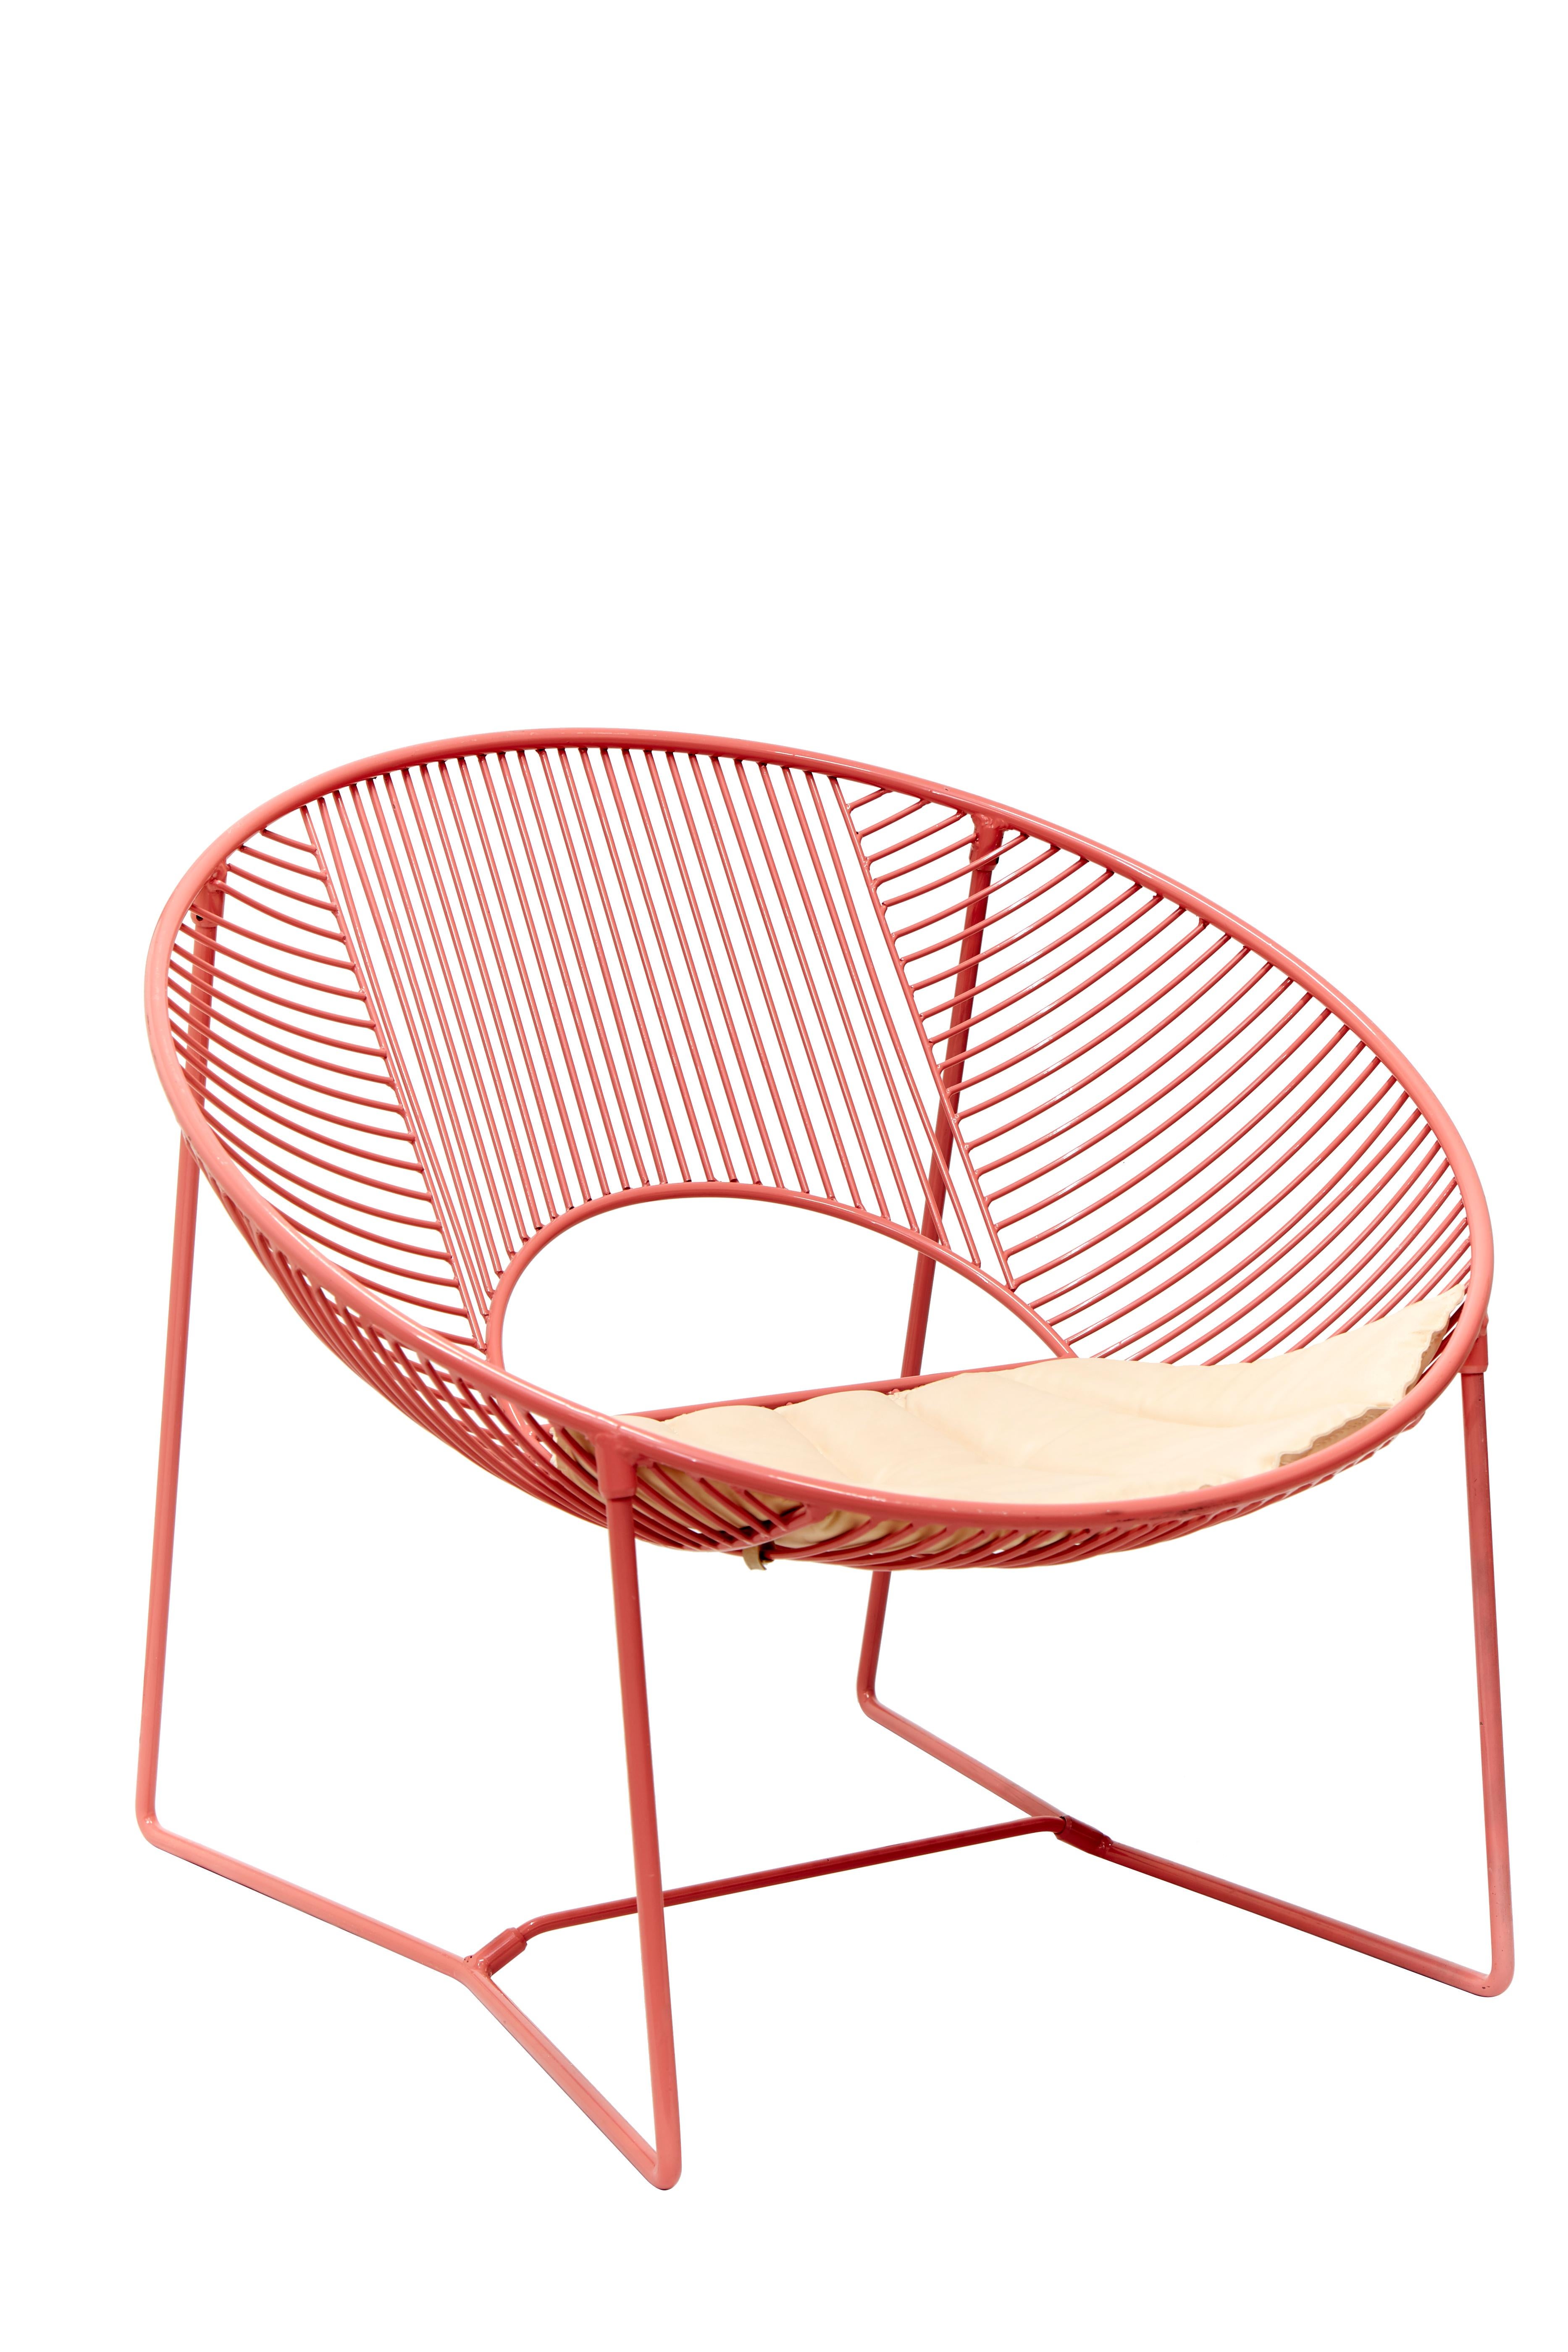 Cette chaise longue d'extérieur est une création unique de León León Design de Mexico.
Il est doté d'une structure solide en acier peint par poudrage et peut être utilisé à l'intérieur ou à l'extérieur.

Fabriquée à la main en petites séries, chaque